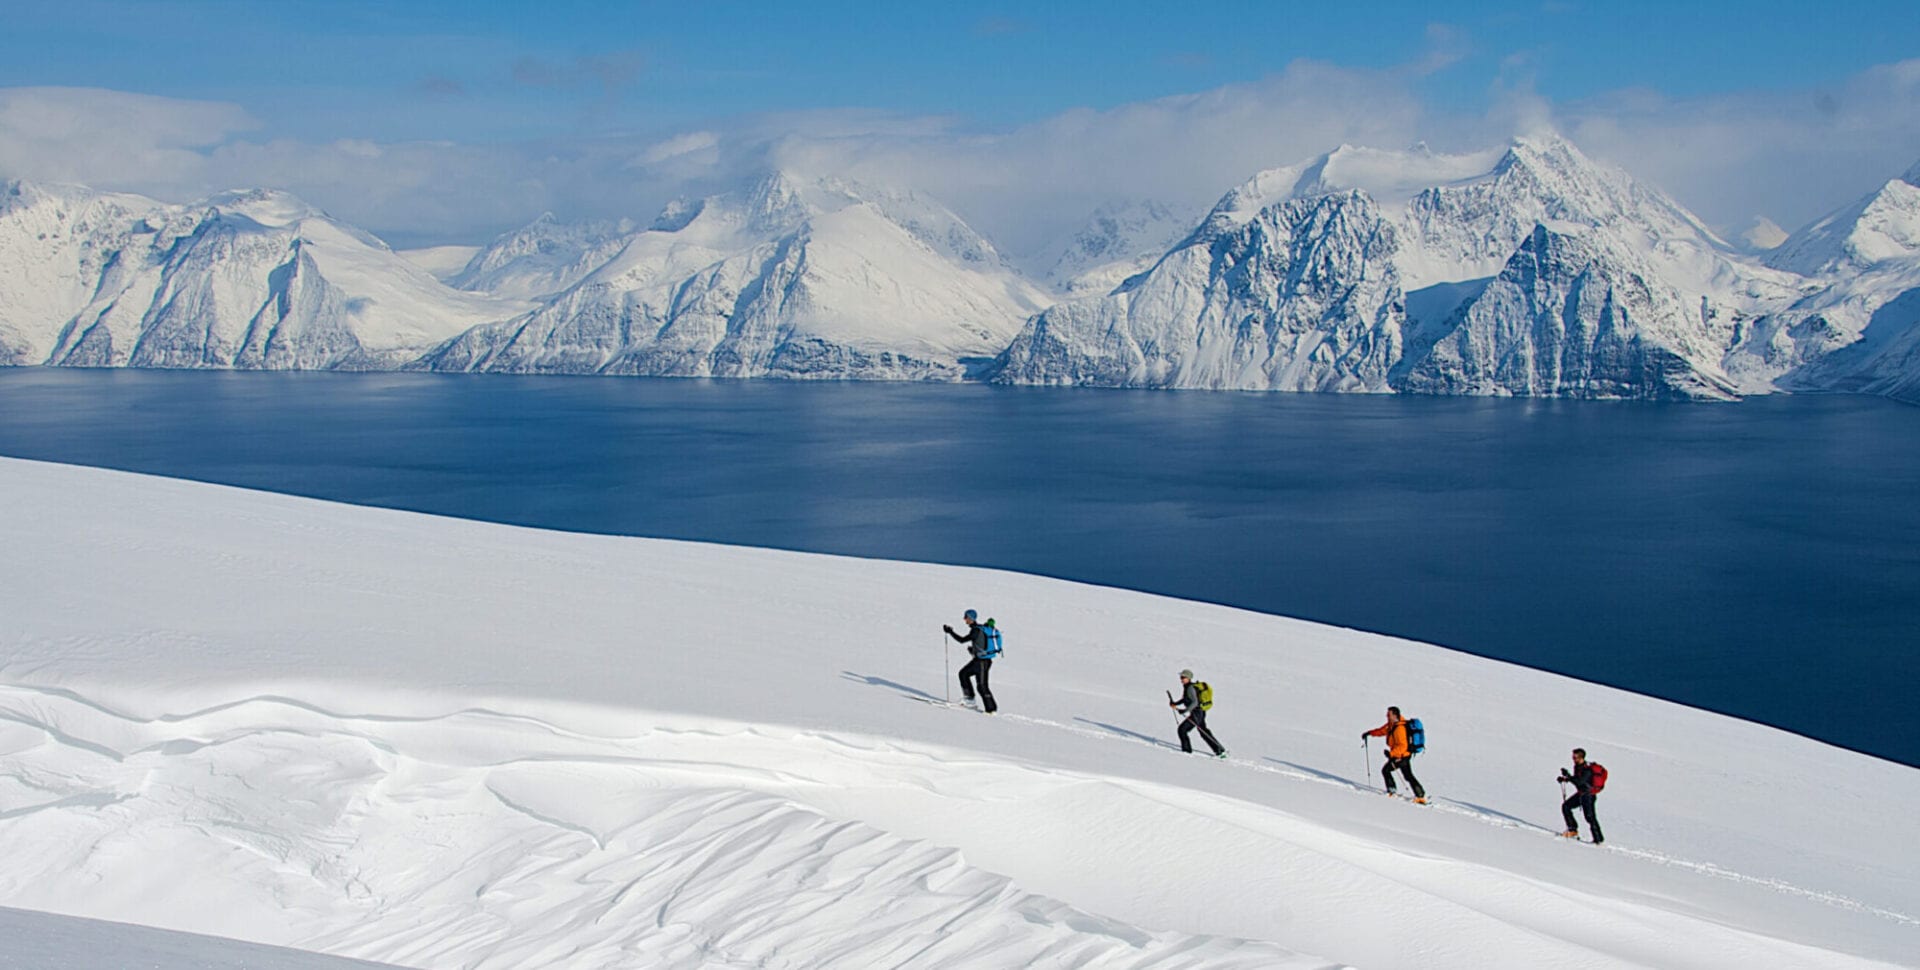 4 skiers ascending Lyngen Alps in Norway